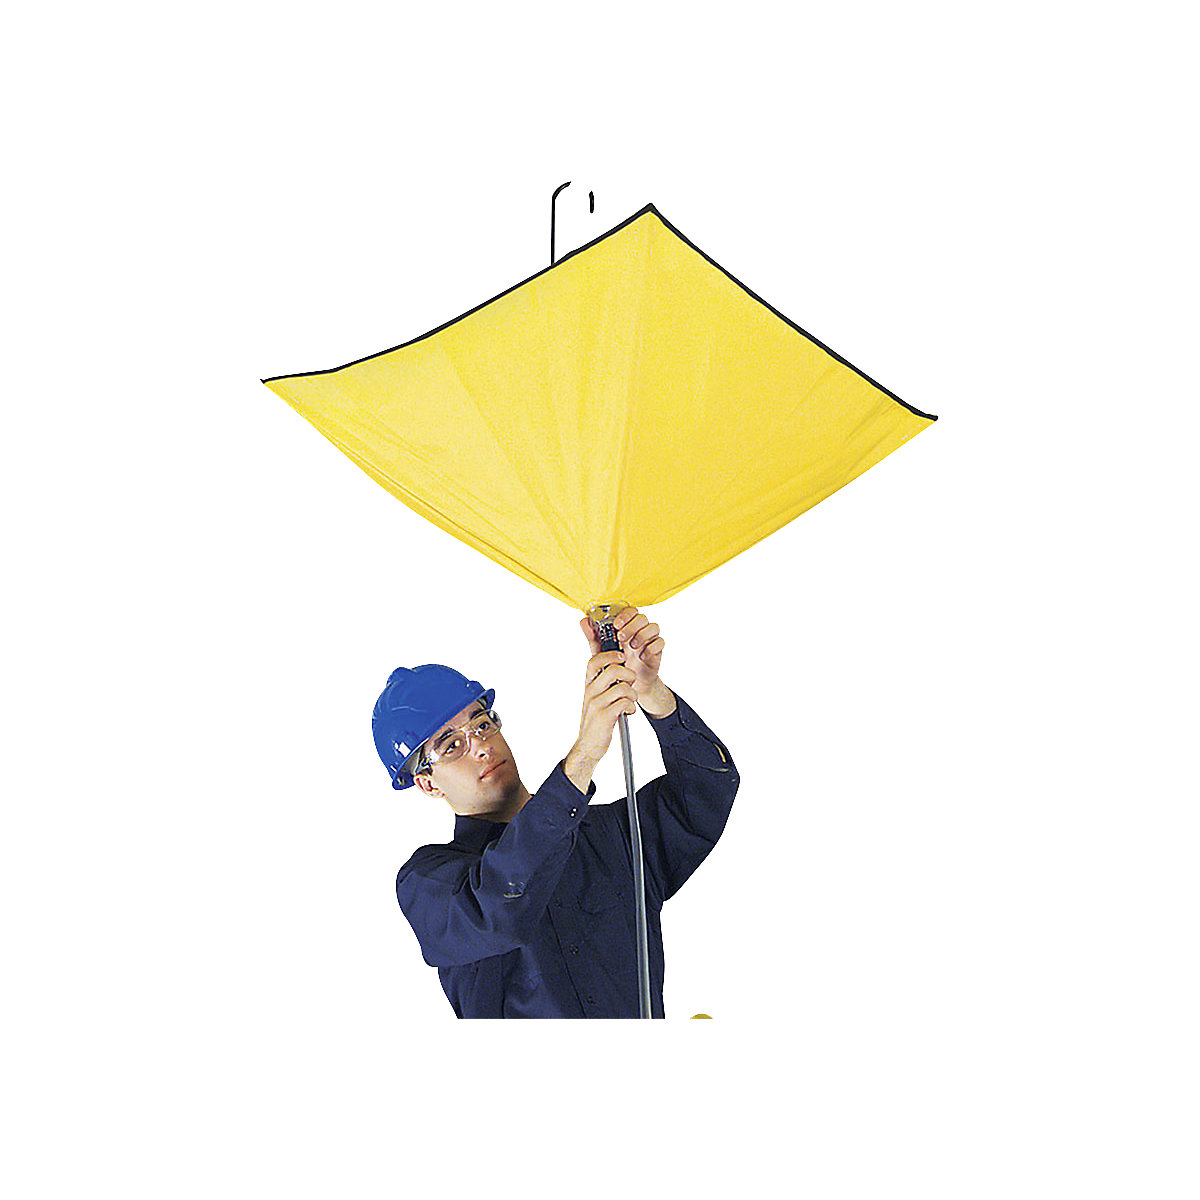 Kit de defletor de fugas tipo guarda-chuvas – PIG (Imagem do produto 3)-2